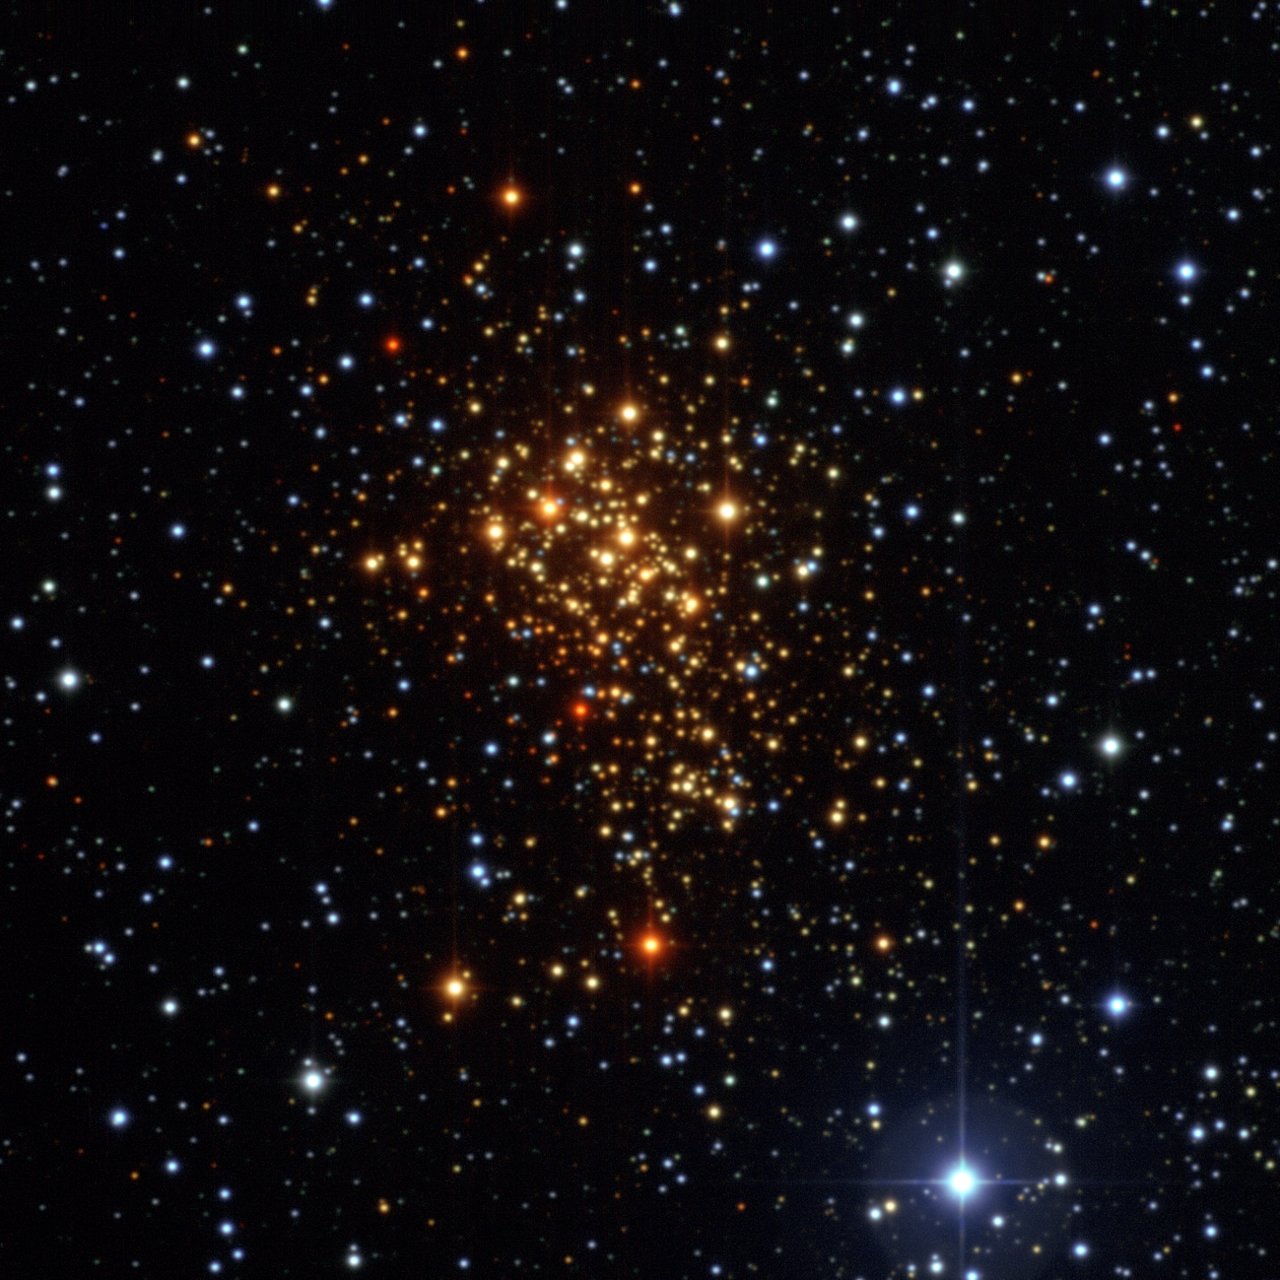 ESO Westerlund 1